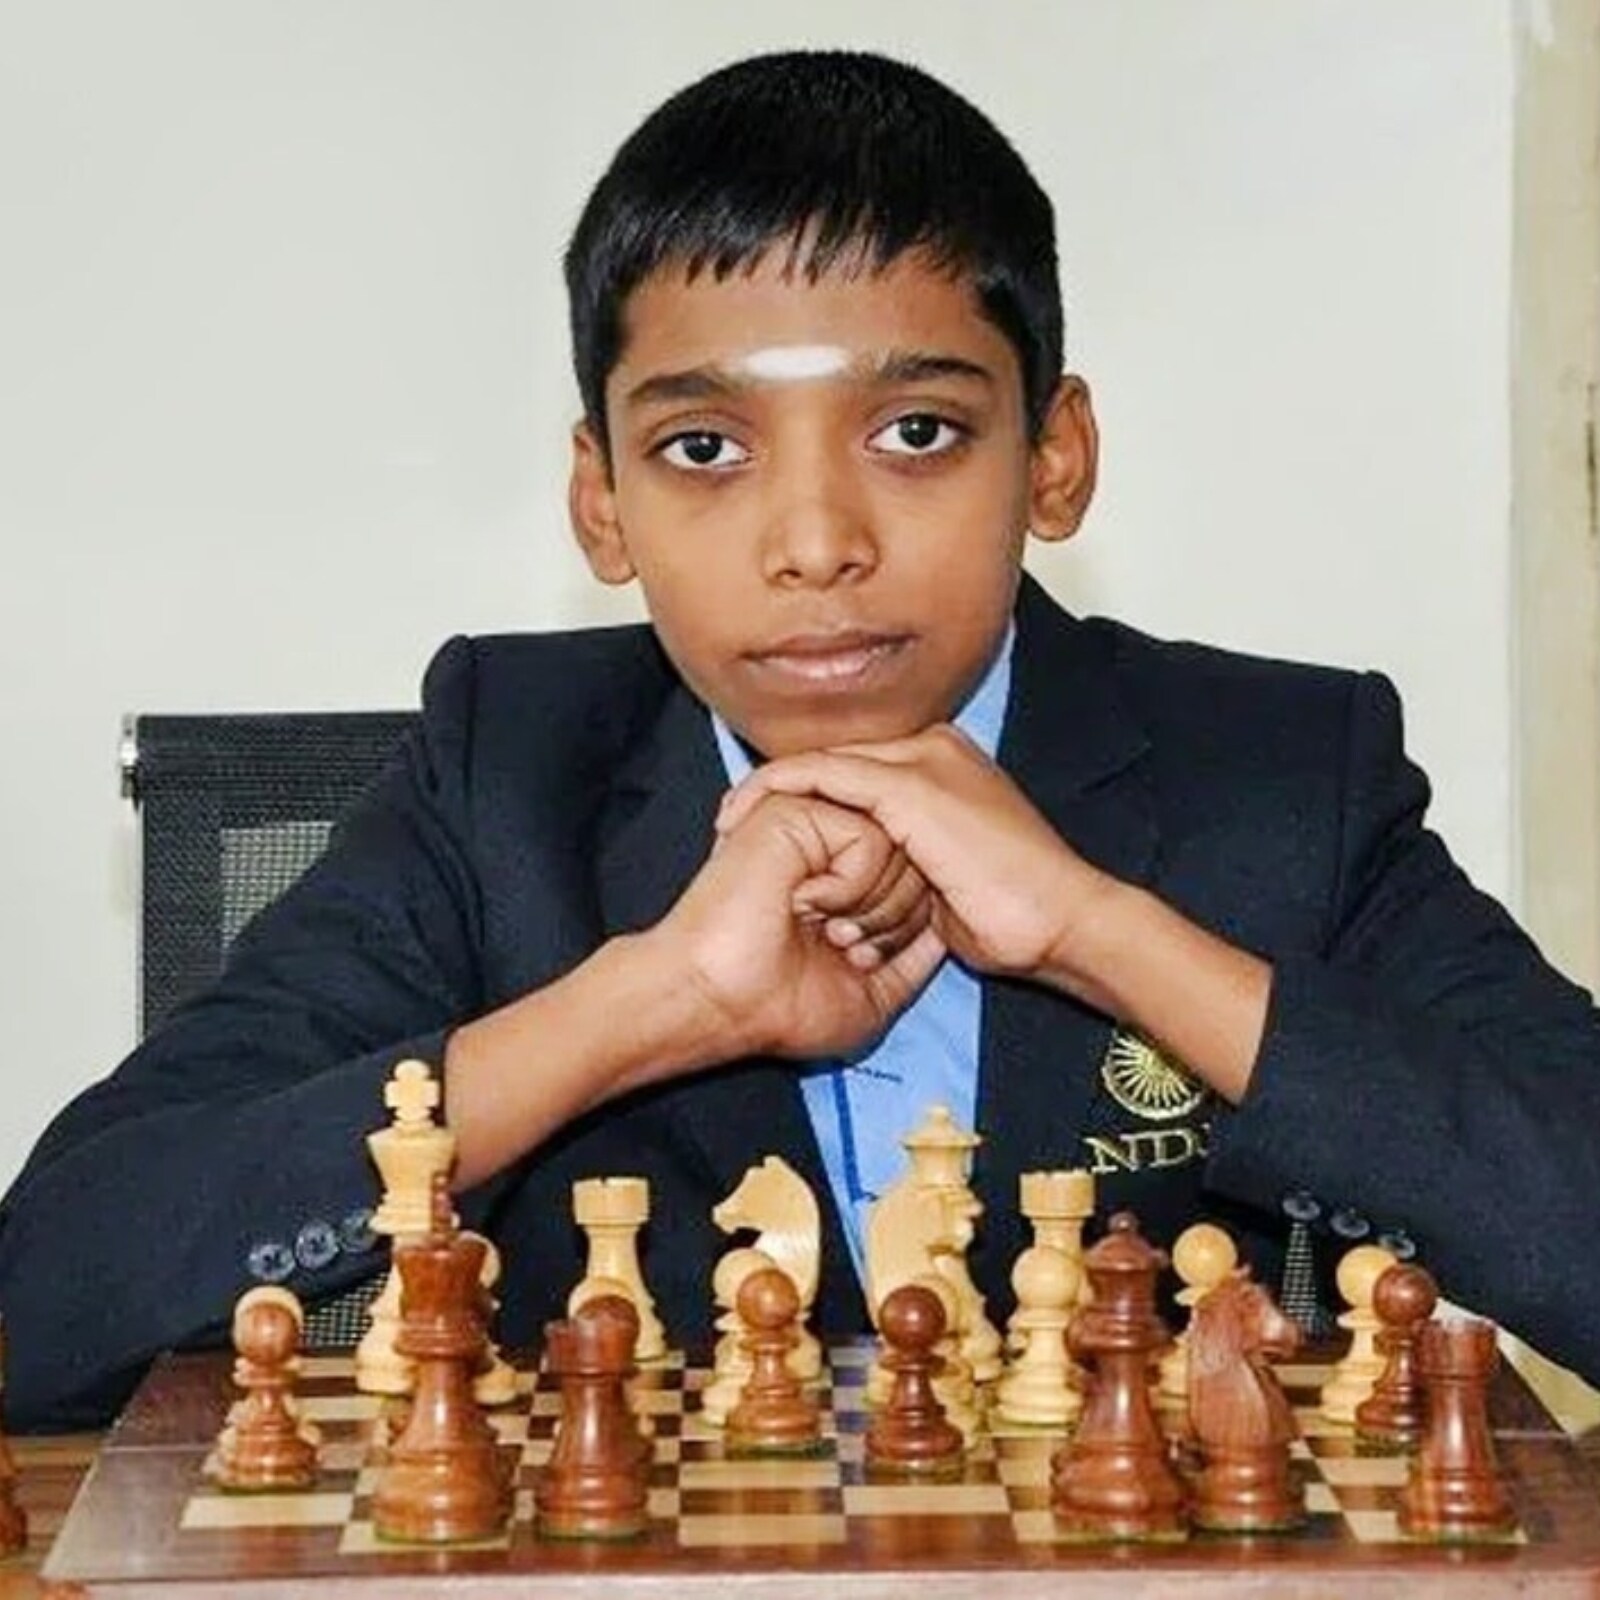 Pranav V. becomes International Master